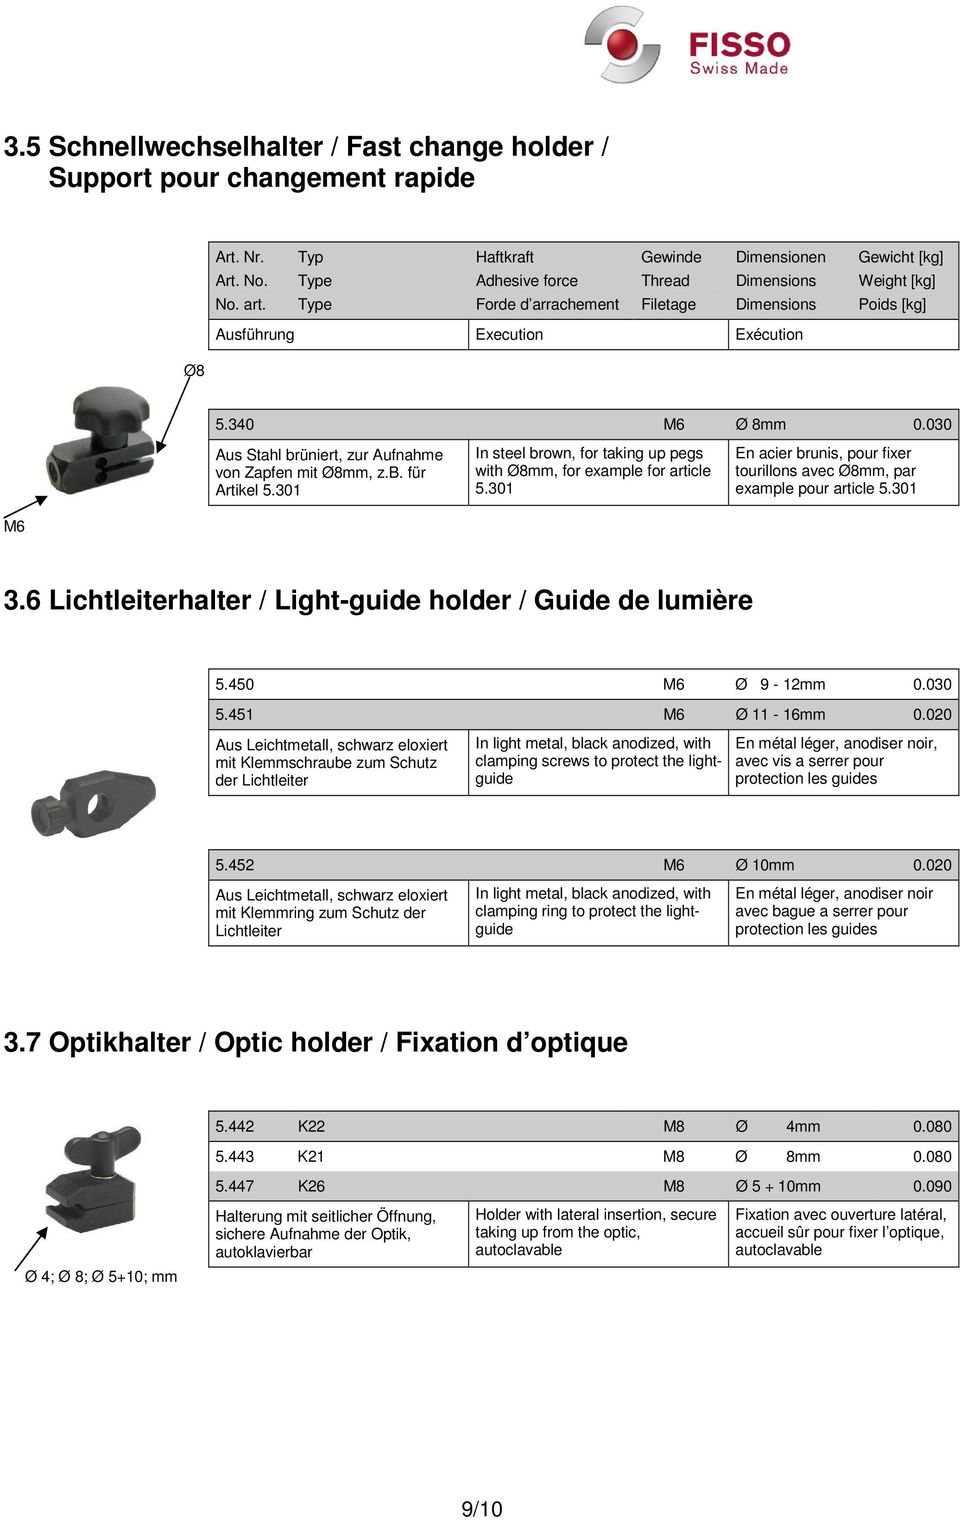 301 En acier brunis, pour fixer tourillons avec Ø8mm, par example pour article 5.301 M6 3.6 Lichtleiterhalter / Light-guide holder / Guide de lumière 5.450 M6 Ø 9-12mm 0.030 5.451 M6 Ø 11-16mm 0.